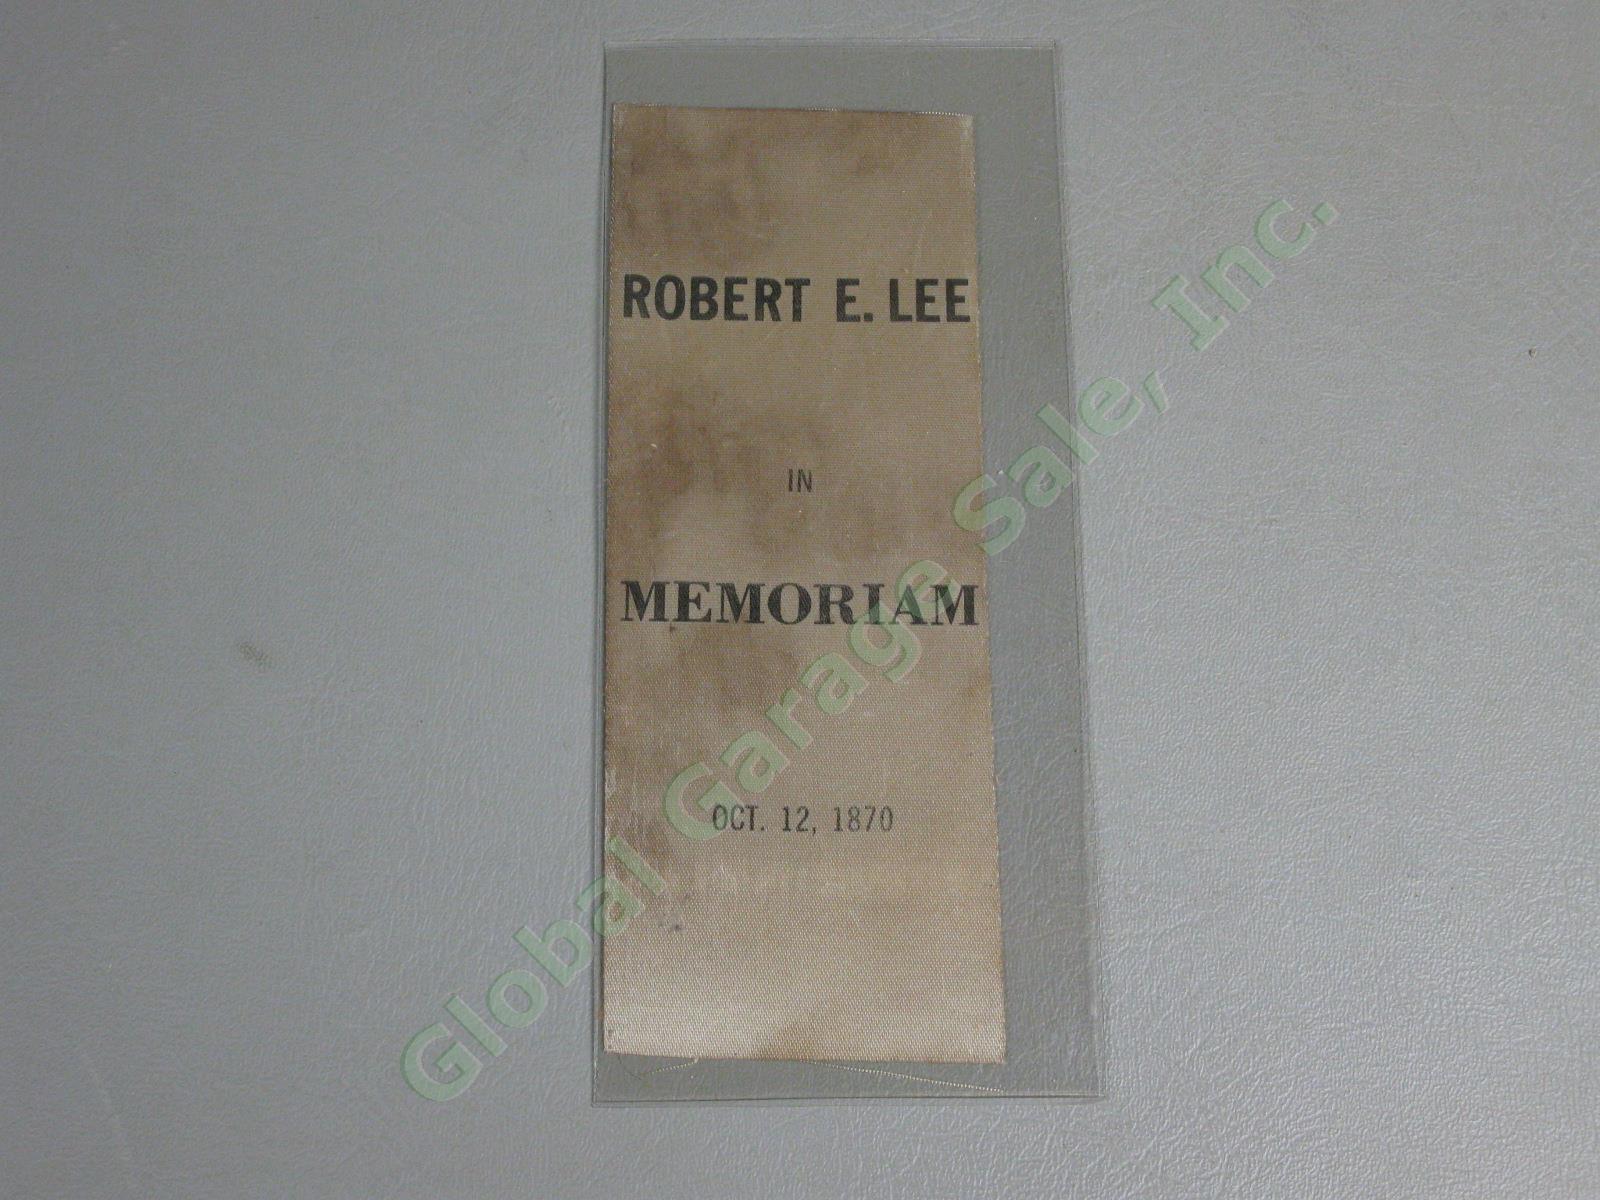 Rare Orig Civil War General Robert E Lee Memoriam Ribbon Oct 12 1870 Memorial